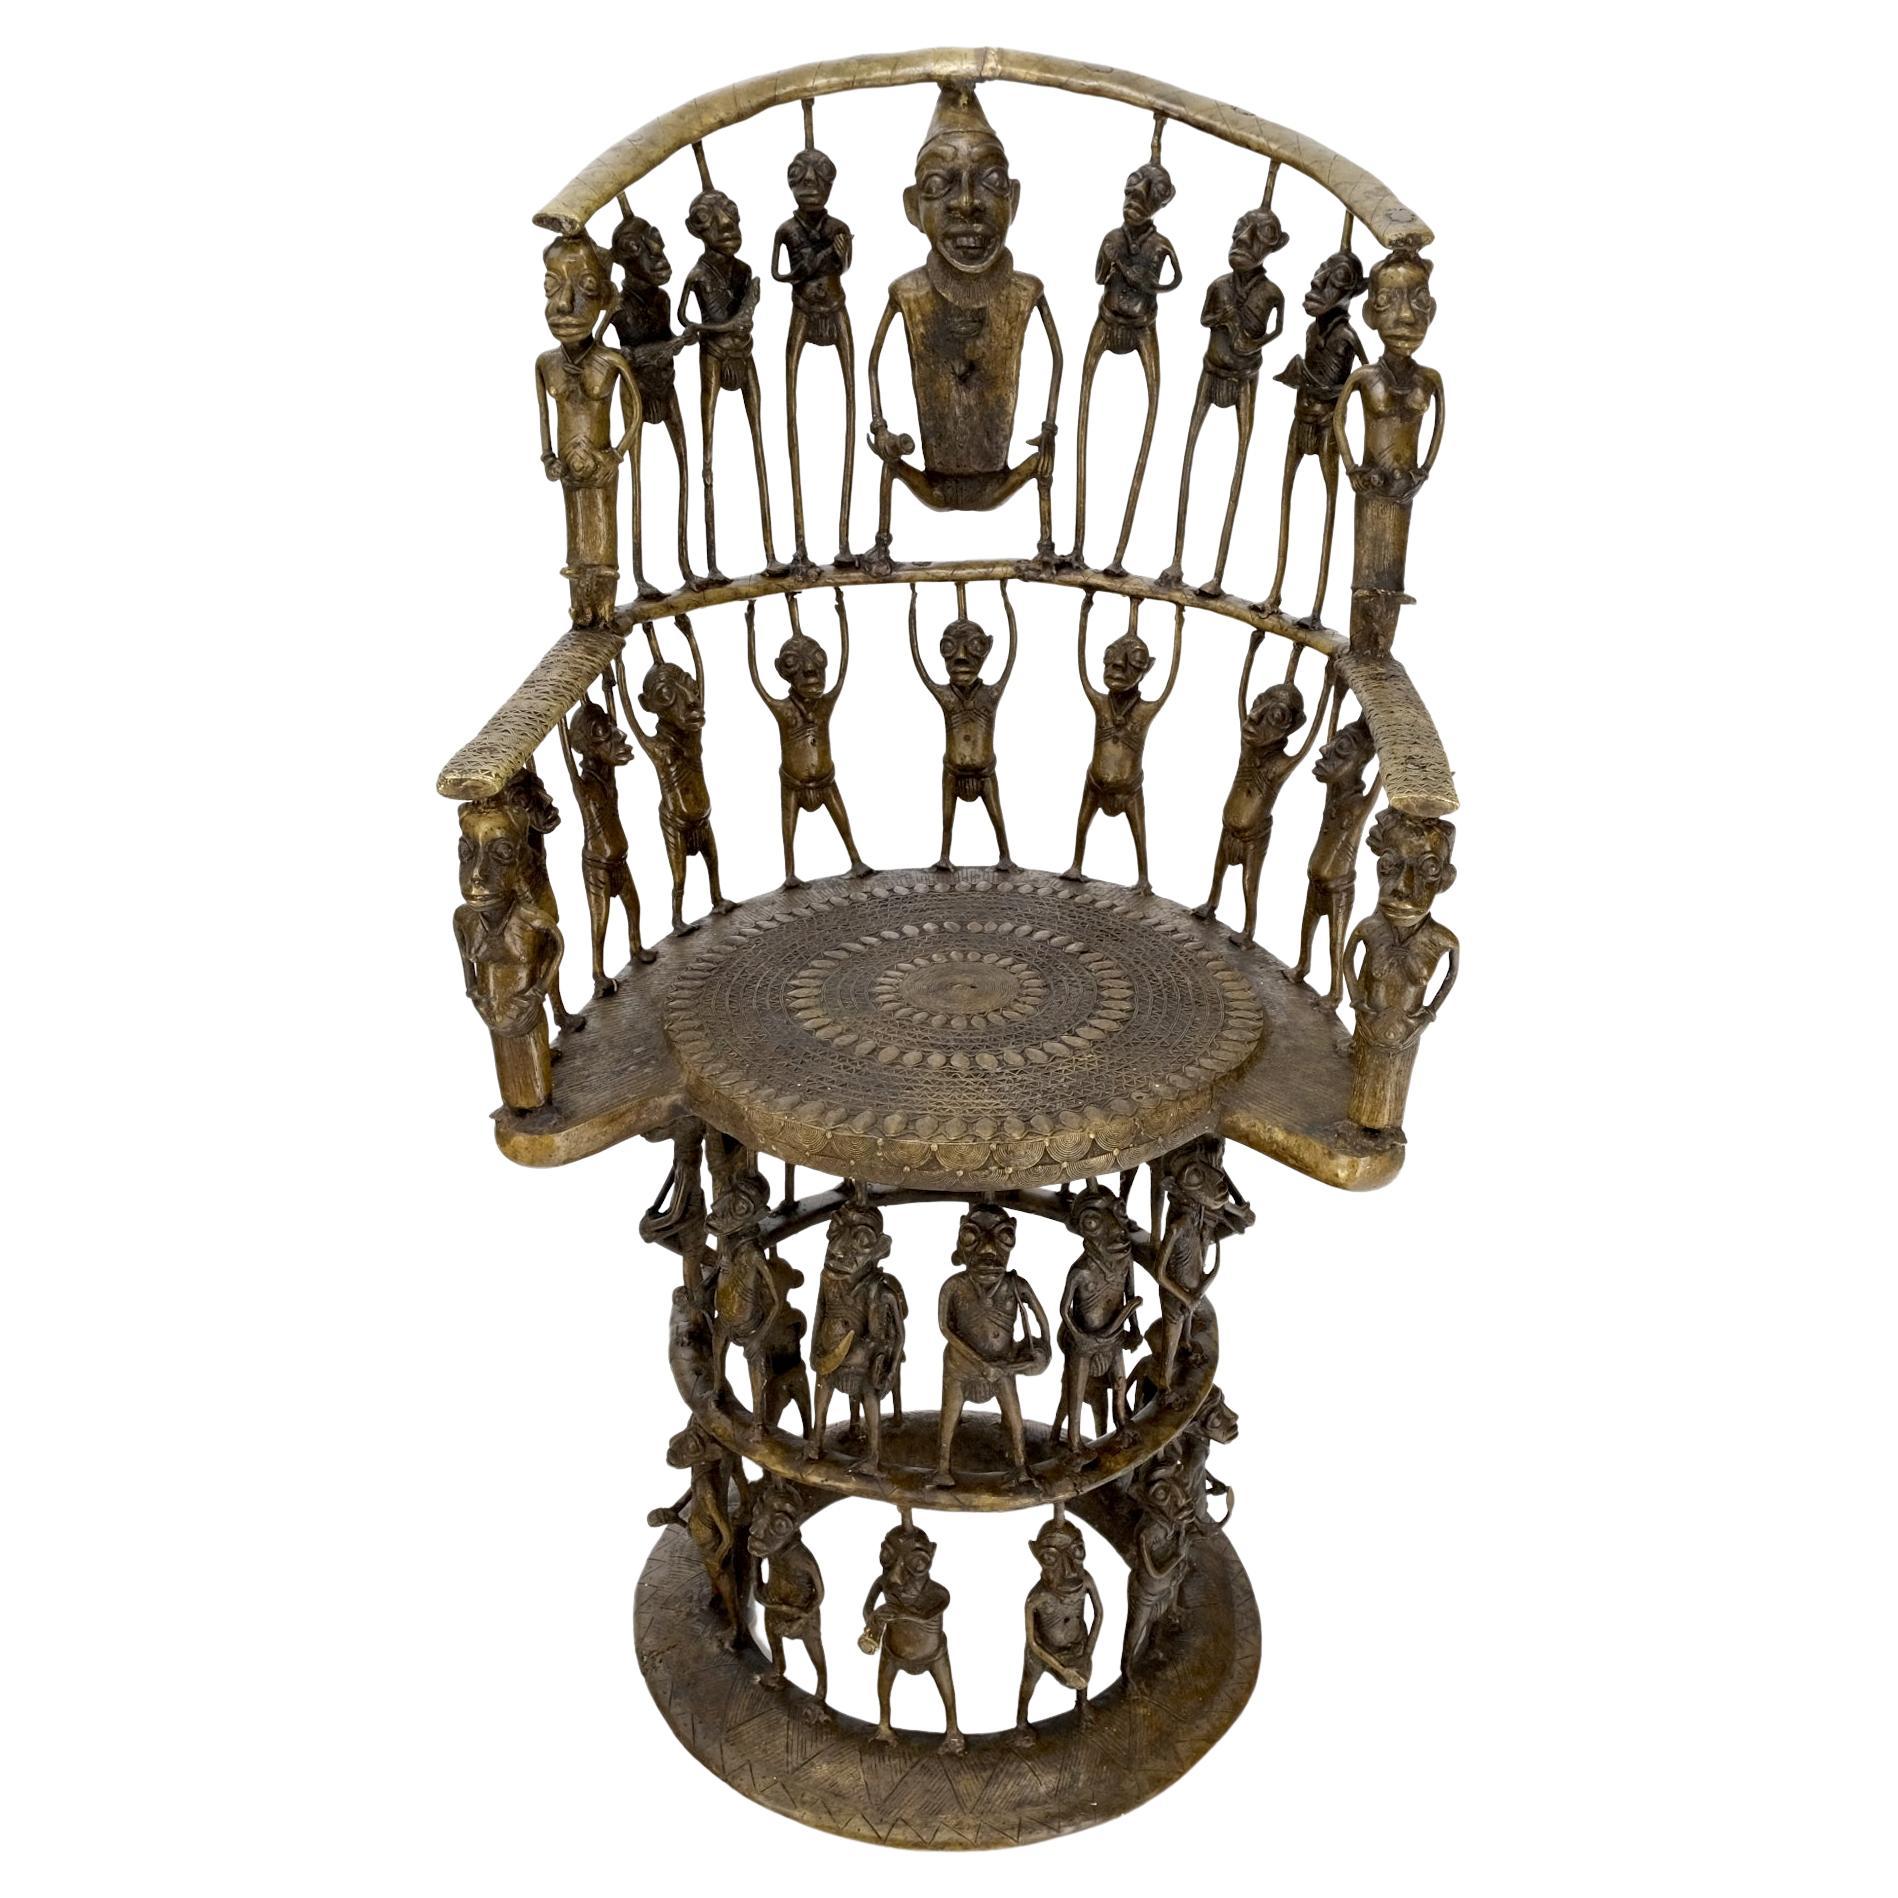 Figurativer Thronsessel aus massiver Bronze mit 44 Figuren aus afrikanischem Kamee